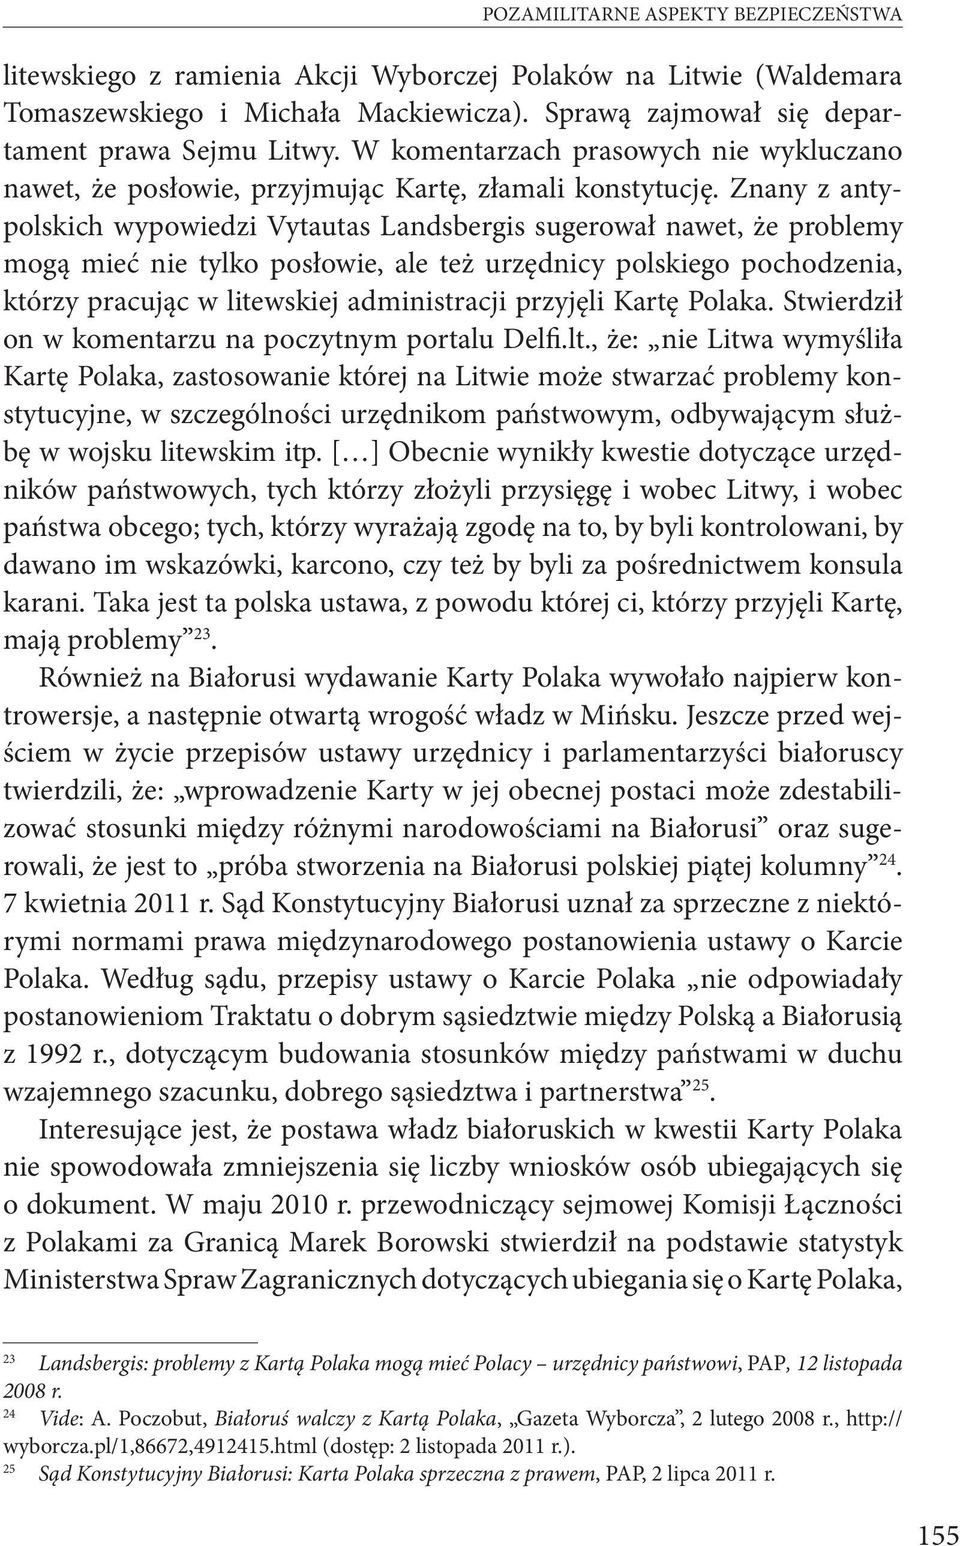 Znany z antypolskich wypowiedzi Vytautas Landsbergis sugerował nawet, że problemy mogą mieć nie tylko posłowie, ale też urzędnicy polskiego pochodzenia, którzy pracując w litewskiej administracji